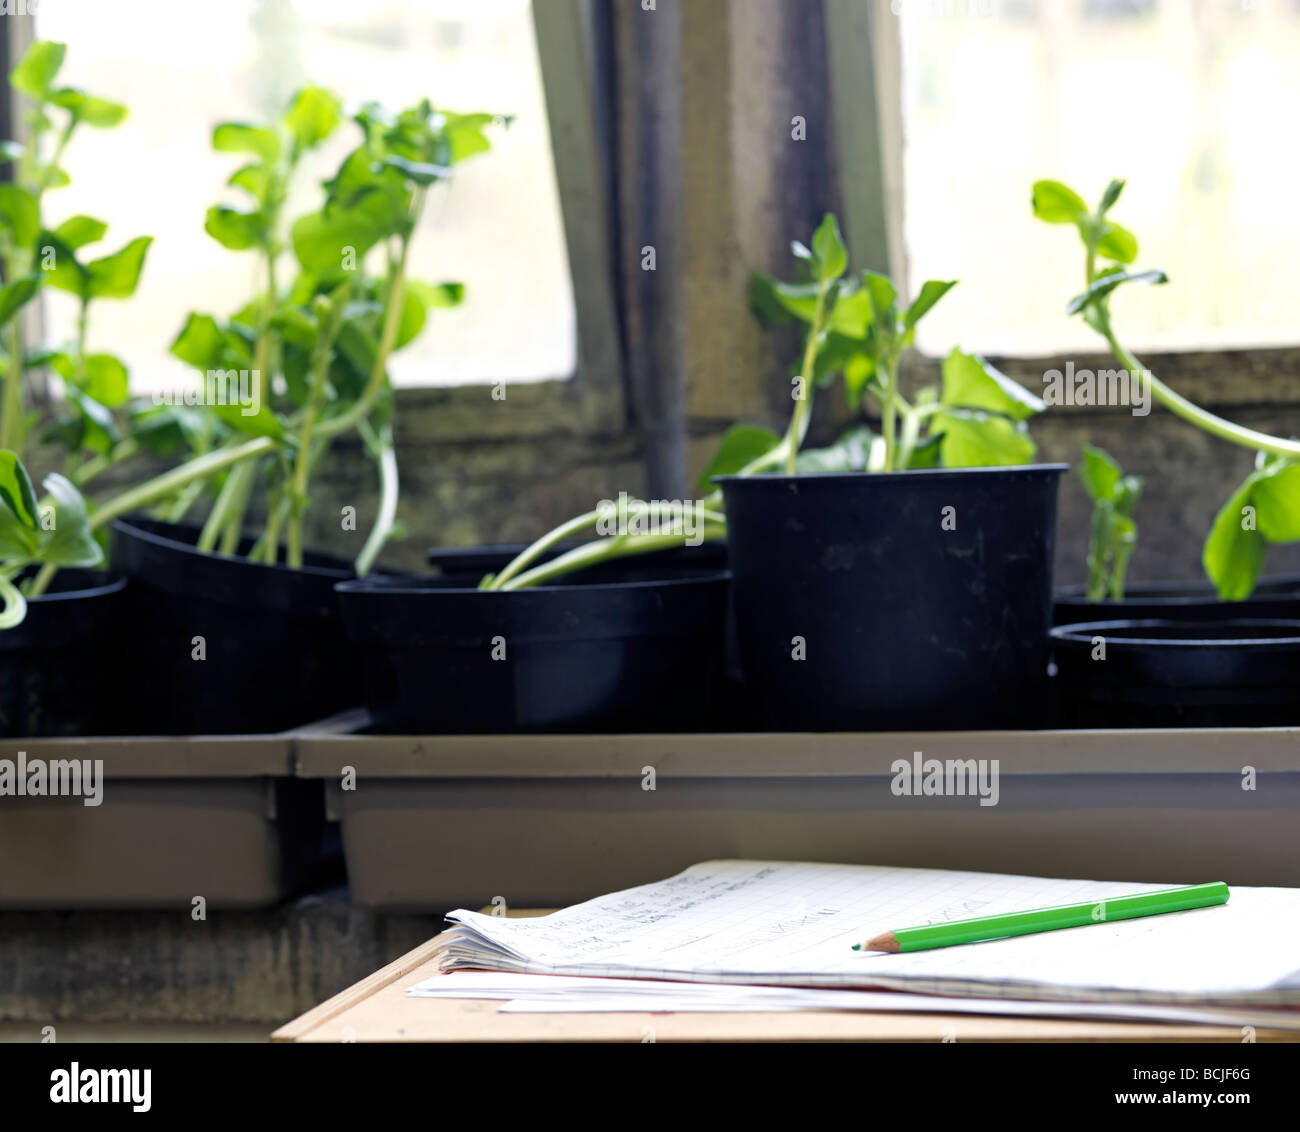 Pflanzen im Klassenzimmer Stockfotografie - Alamy